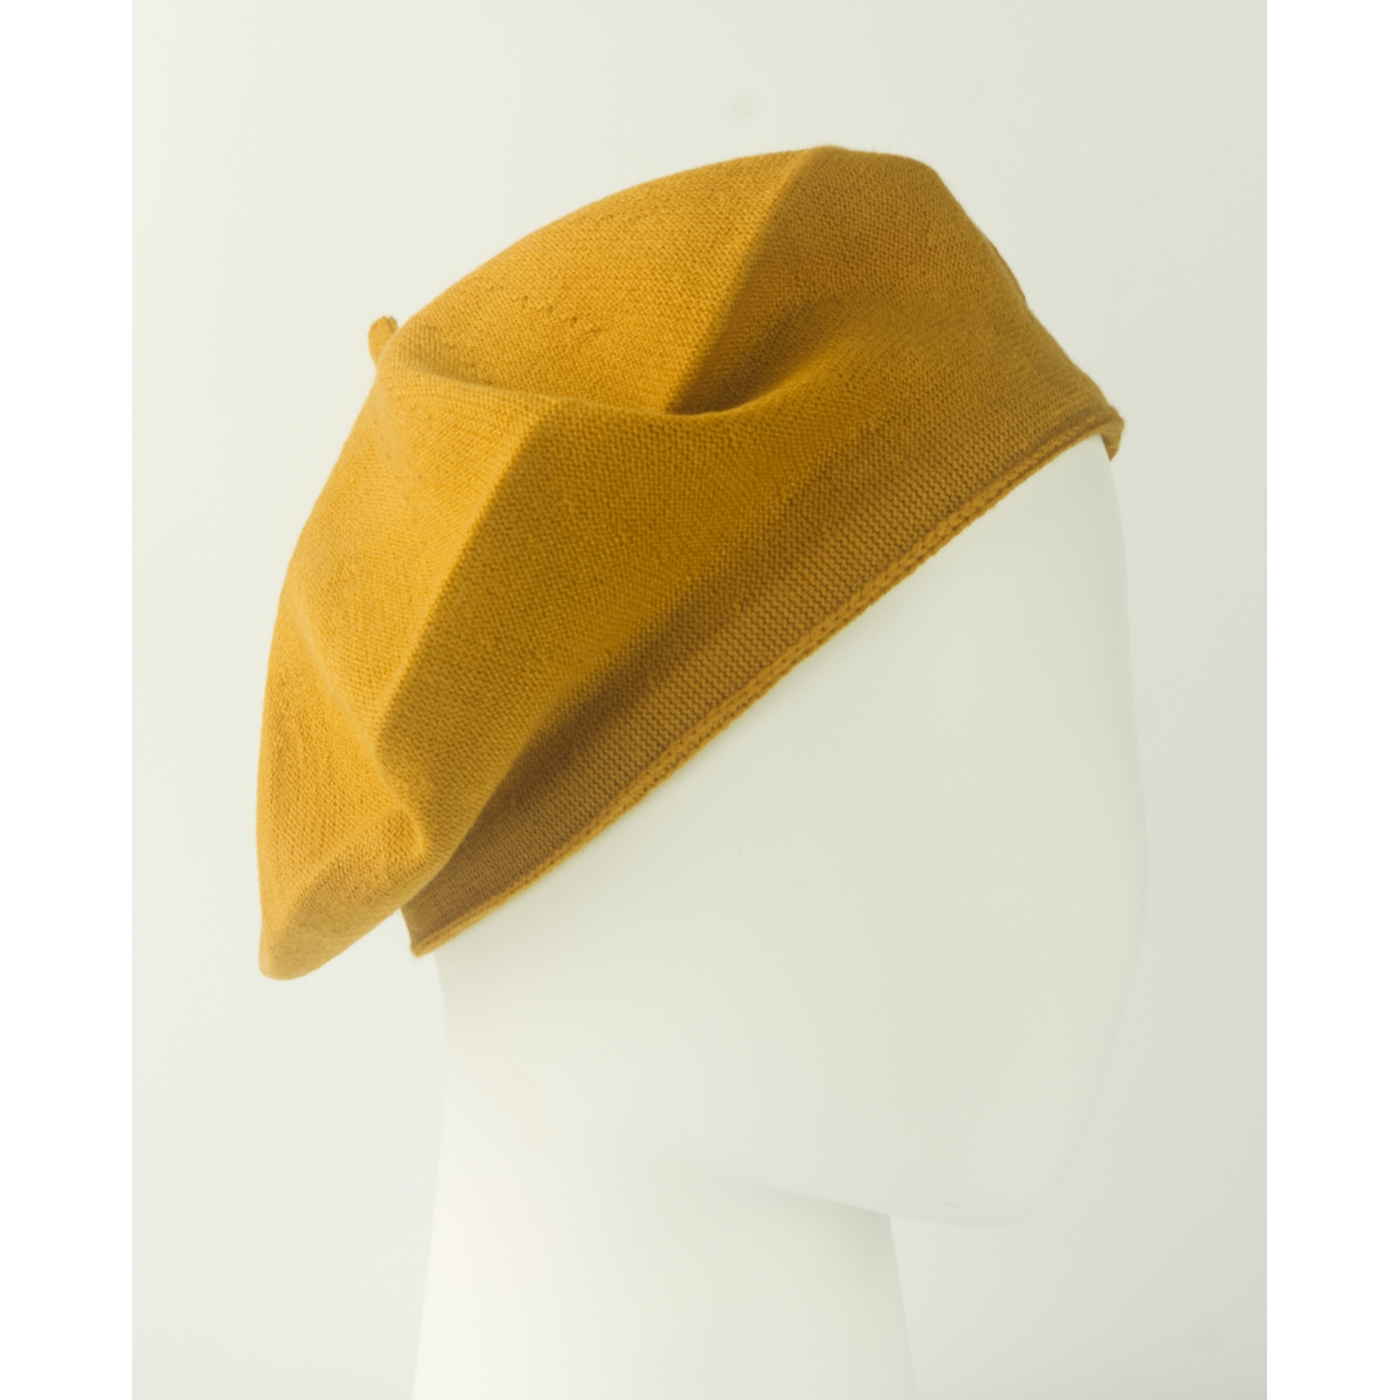 Damski dzianinowy beret Polka – musztardowy żółty